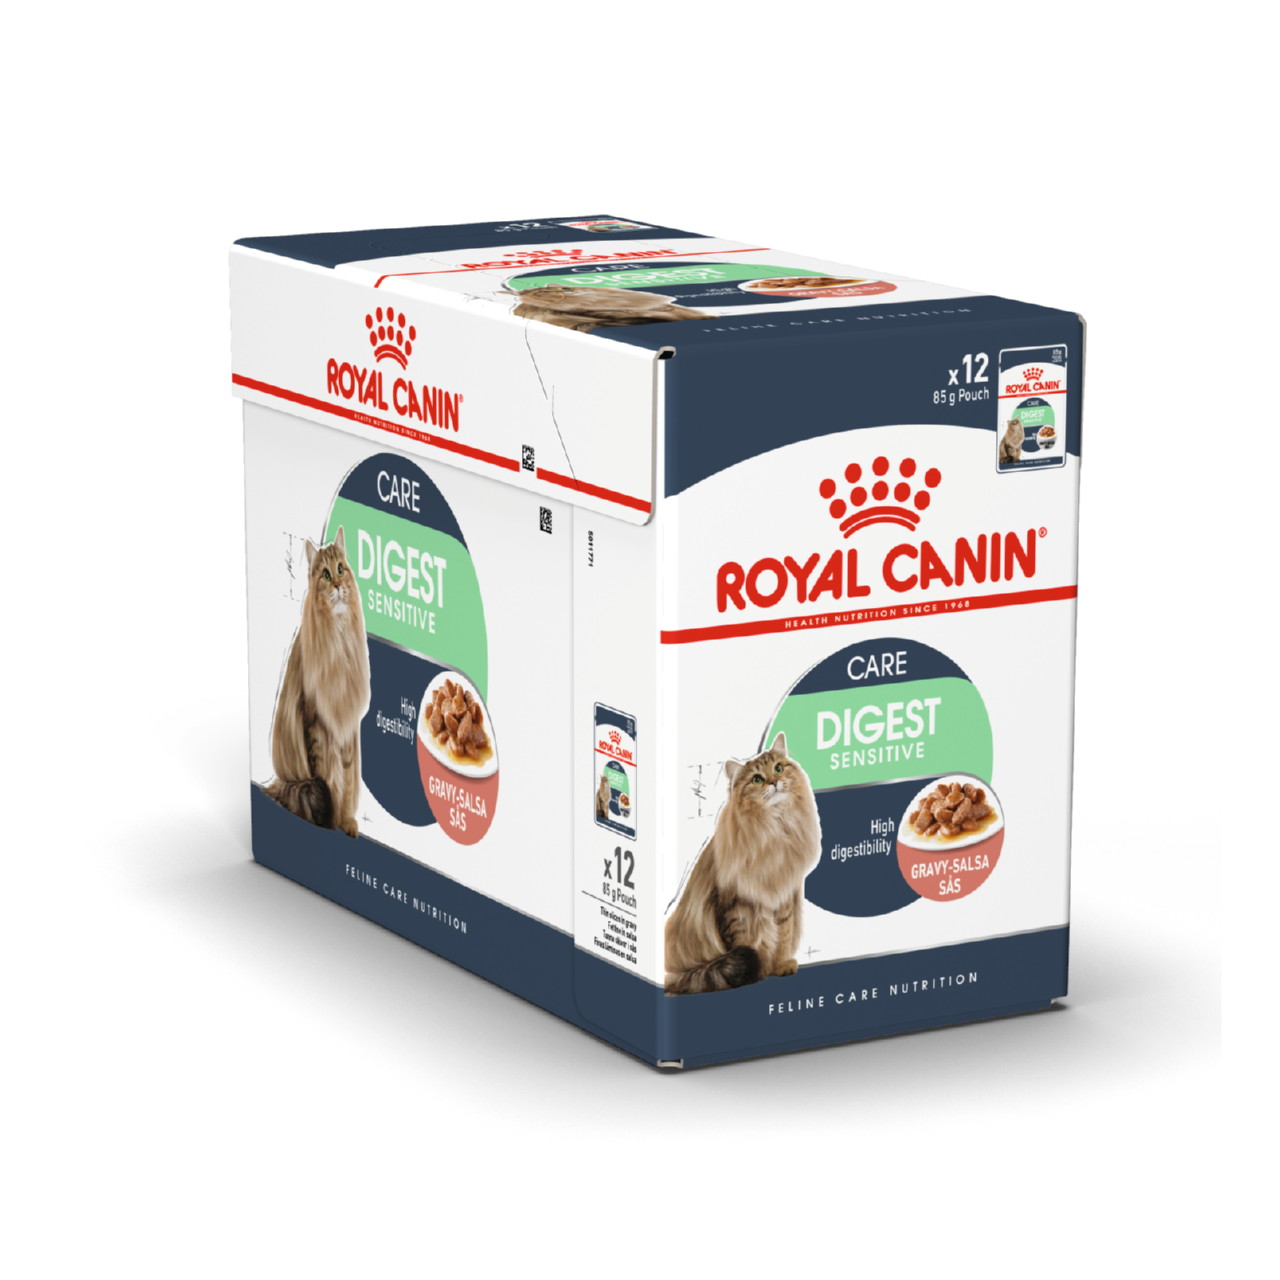 Royal canin urinary care для кошек. Роял Канин Digest sensitive для кошек. Royal Canin Care Light Weight Jell 12*85g. Корм влажный Royal Canin соус для кошек с чувствительным пищеварением, 85г. Royal Canin Hairball.